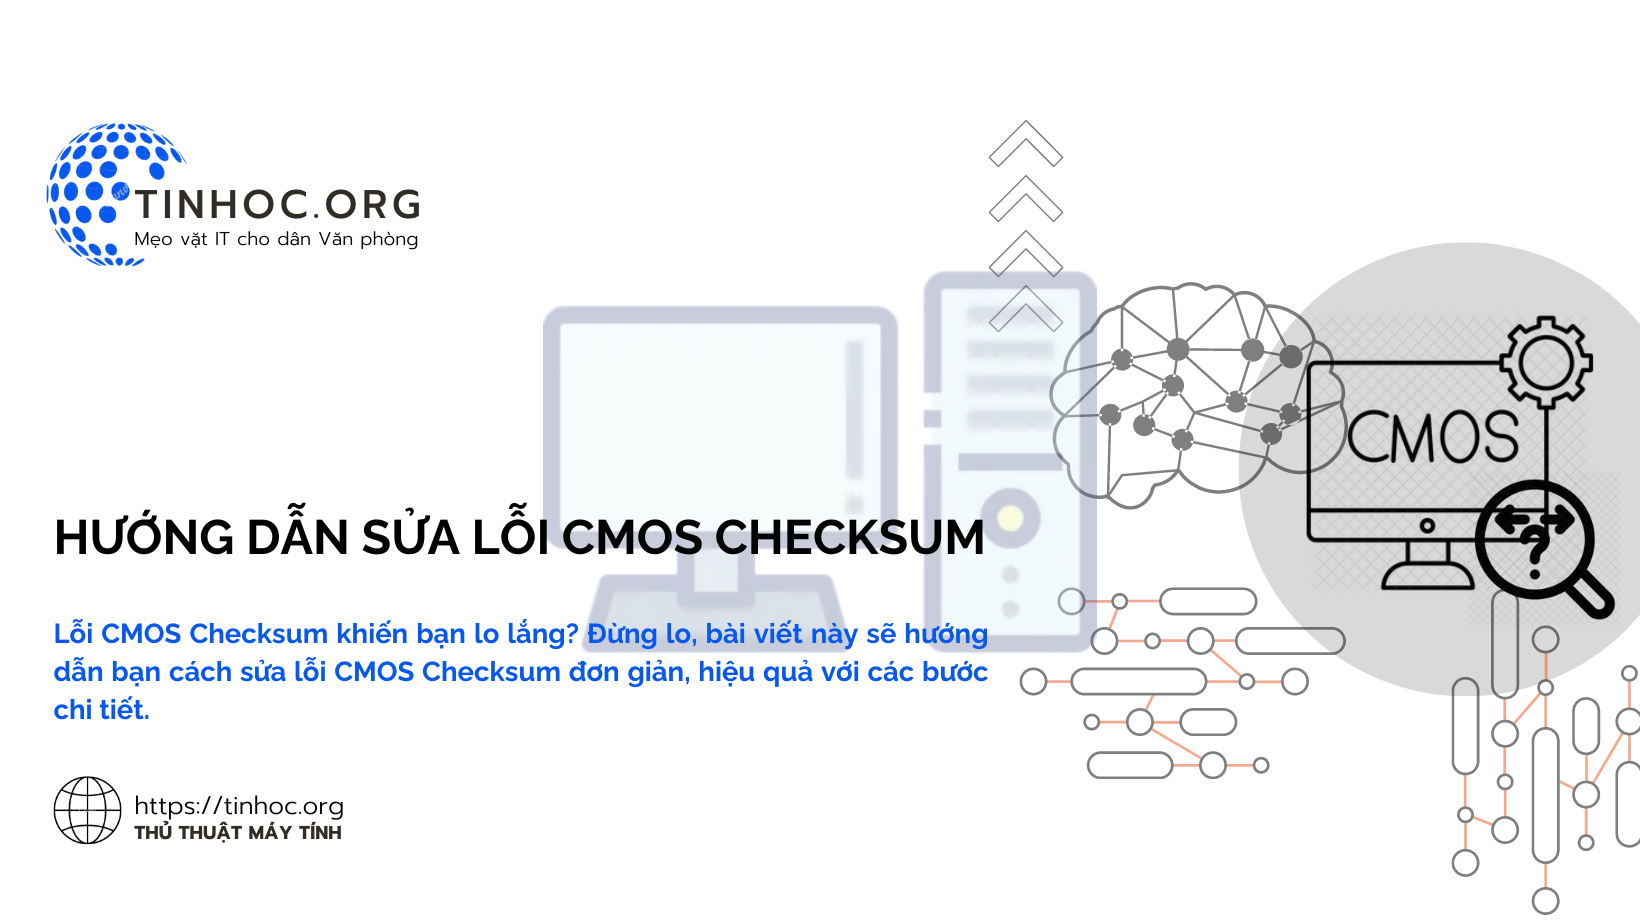 Lỗi CMOS Checksum khiến bạn lo lắng? Đừng lo, bài viết này sẽ hướng dẫn bạn cách sửa lỗi CMOS Checksum đơn giản, hiệu quả với các bước chi tiết.